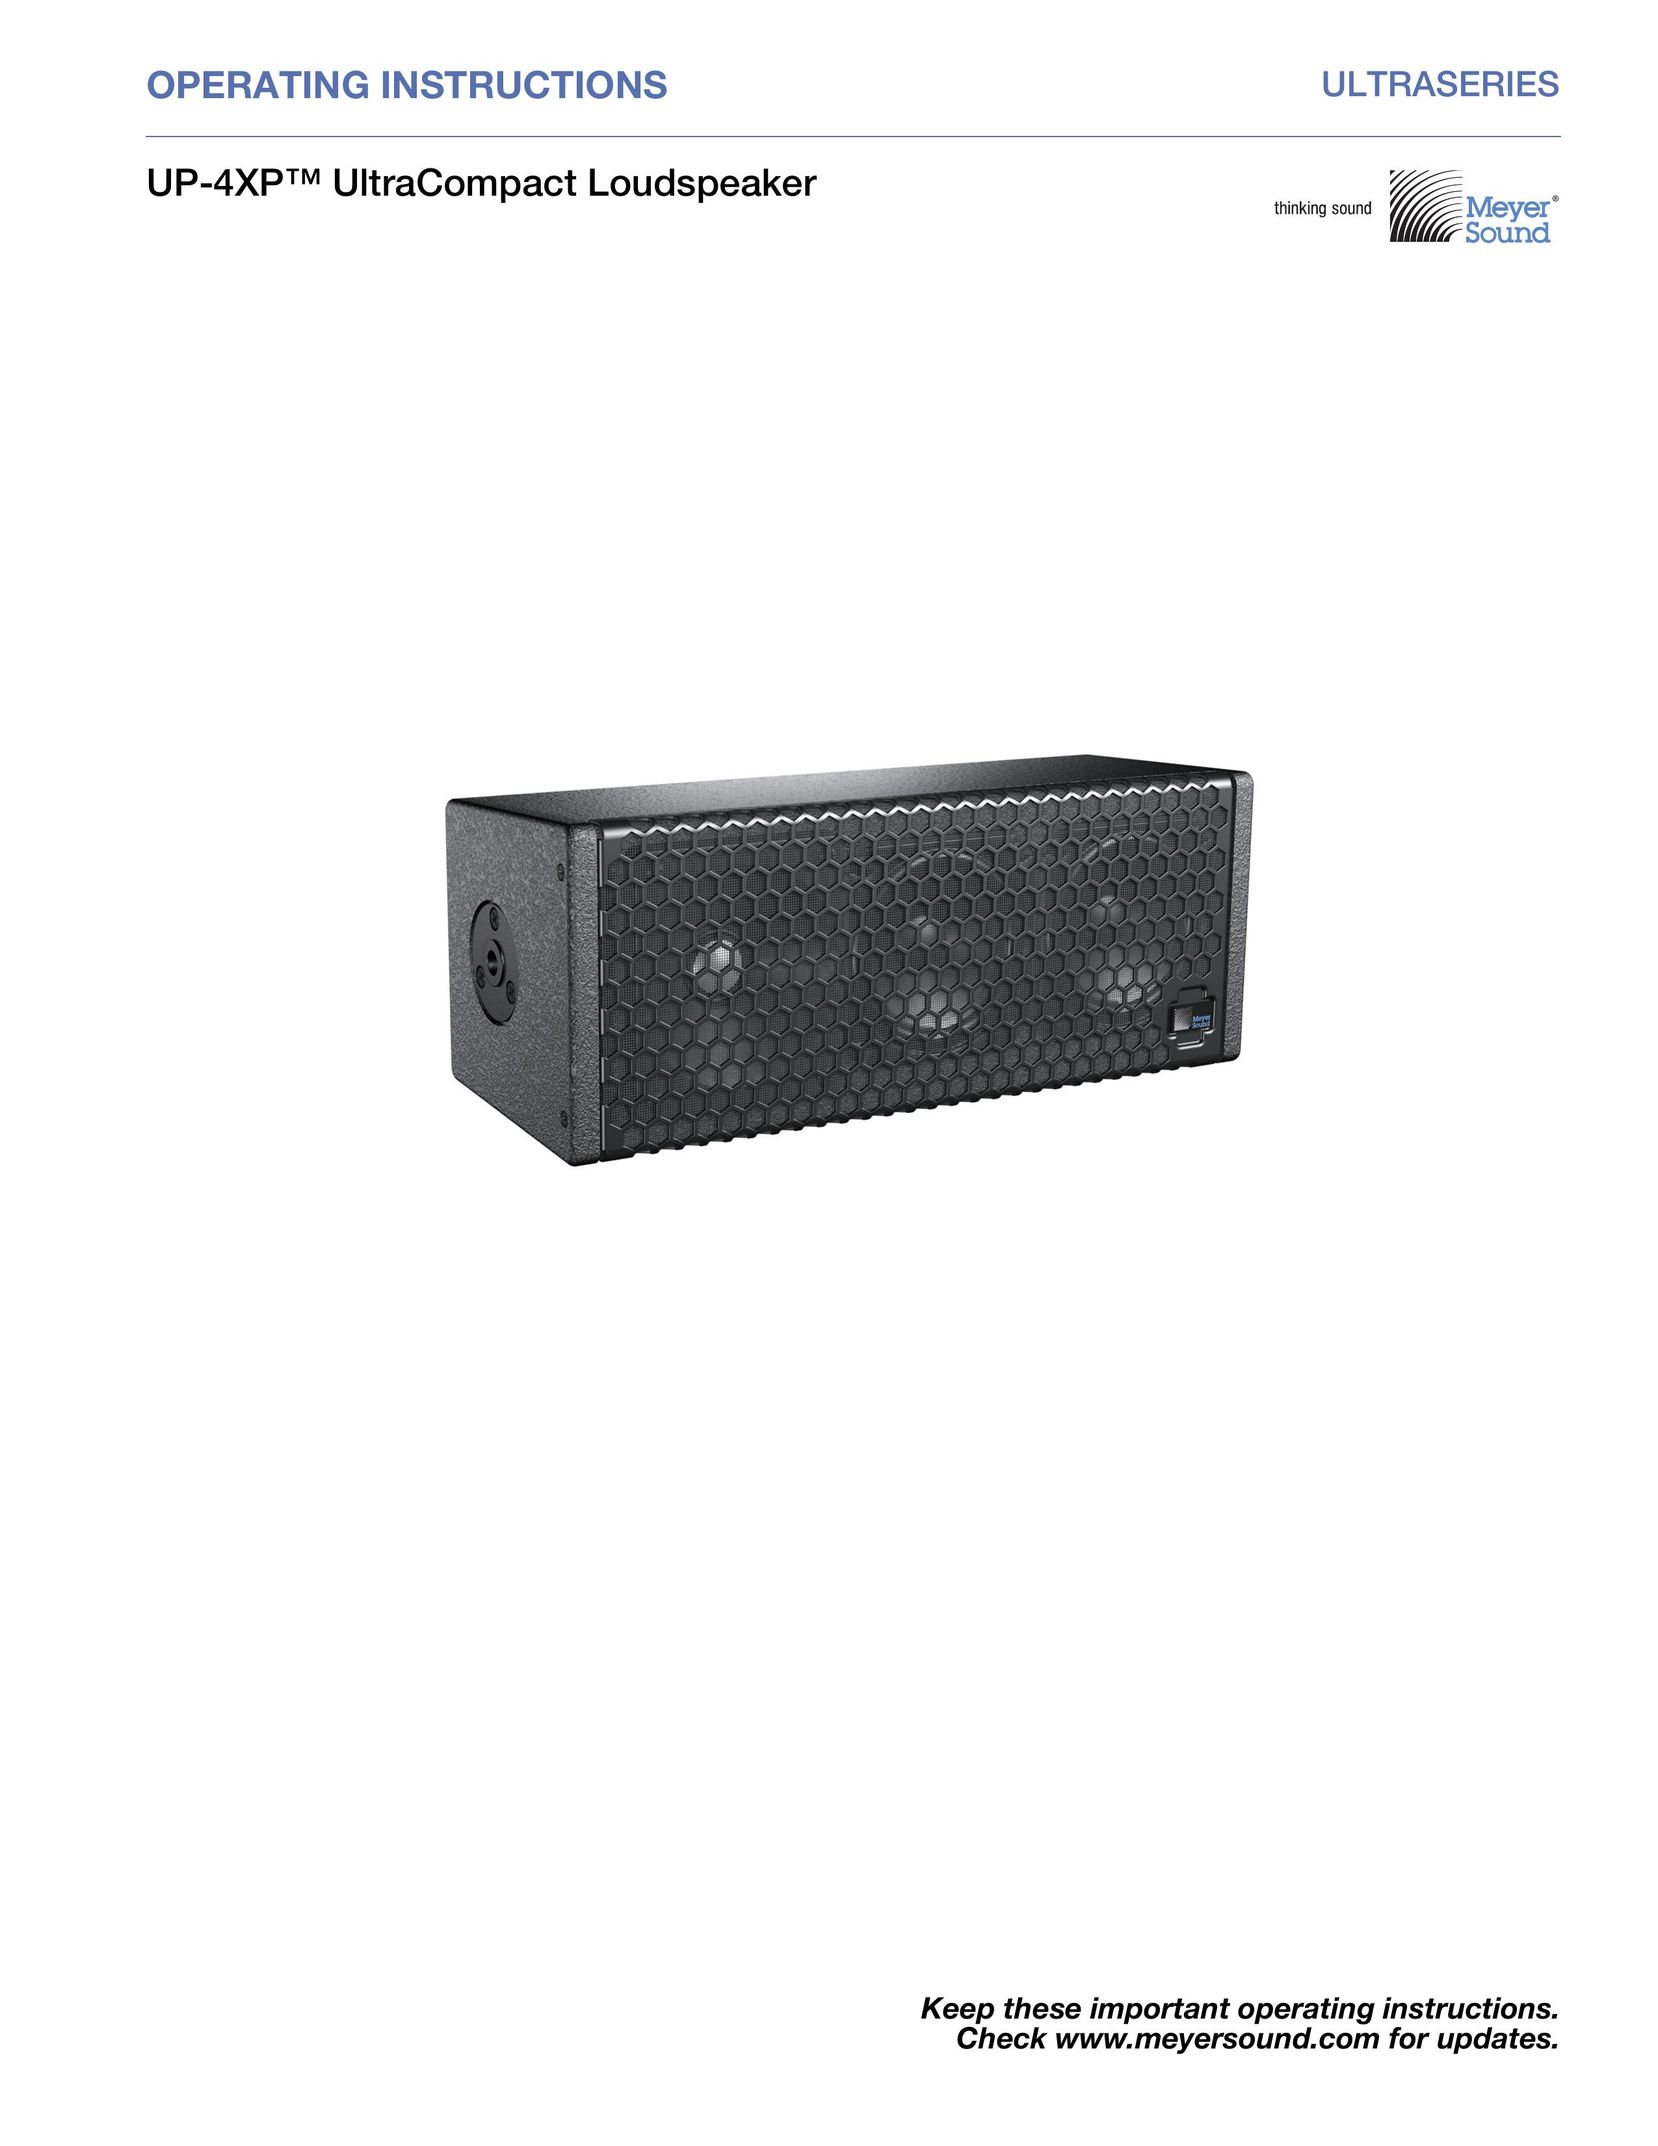 Meyer Sound UP-4XP Car Speaker User Manual